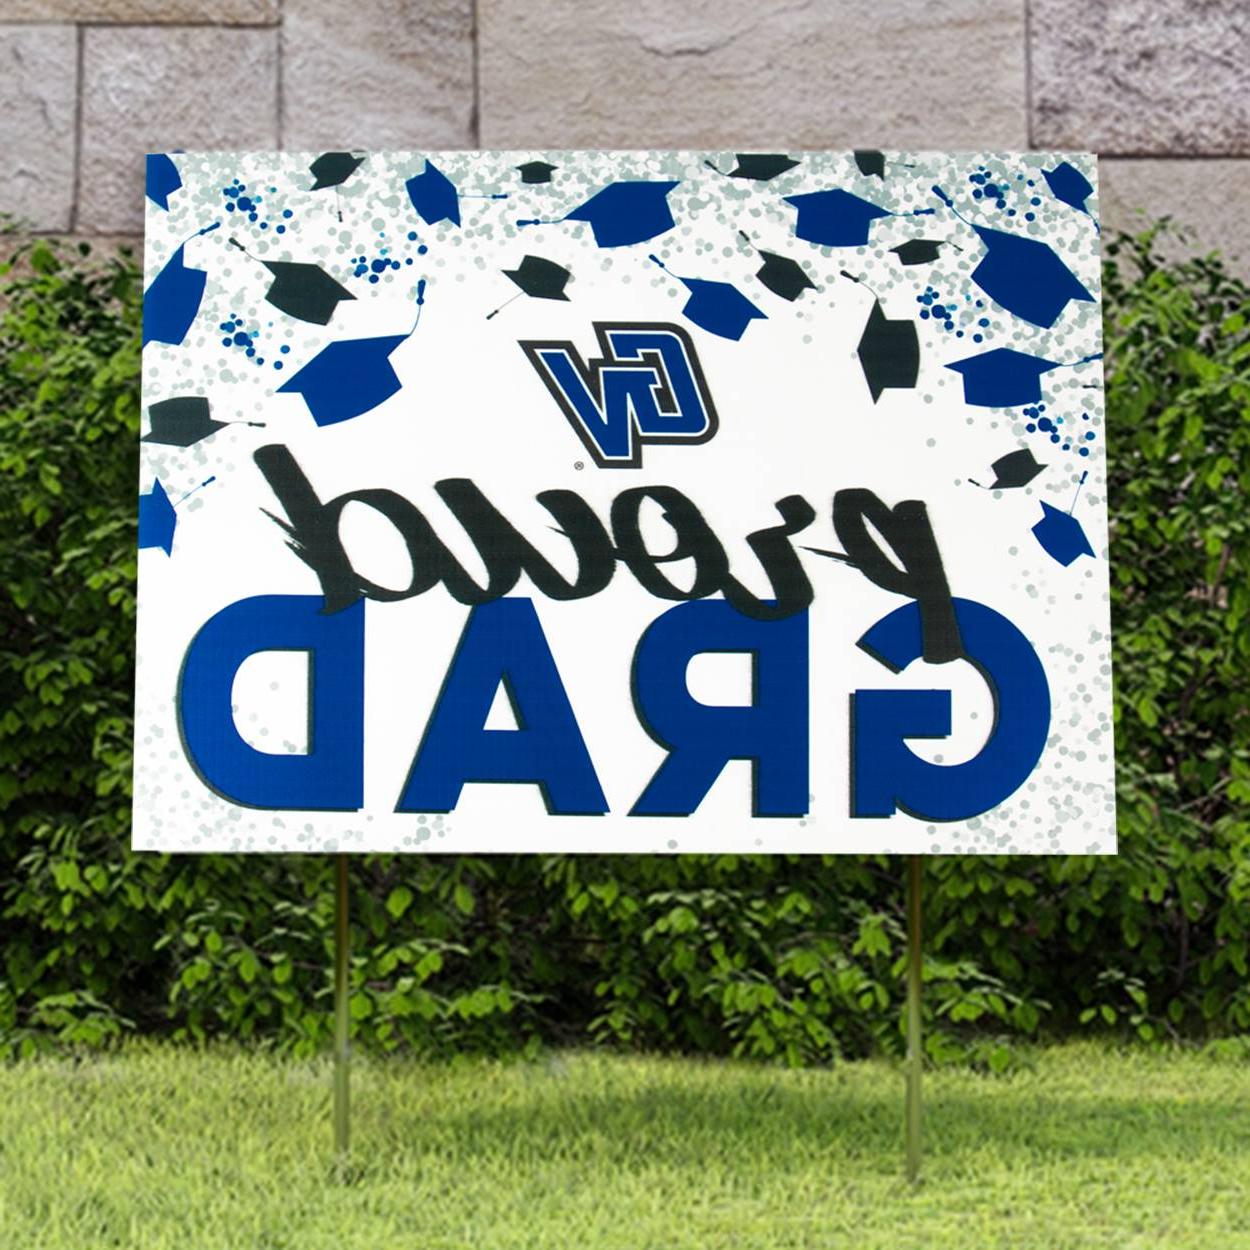 骄傲的GV毕业生院标志显示在草地与图形毕业生帽